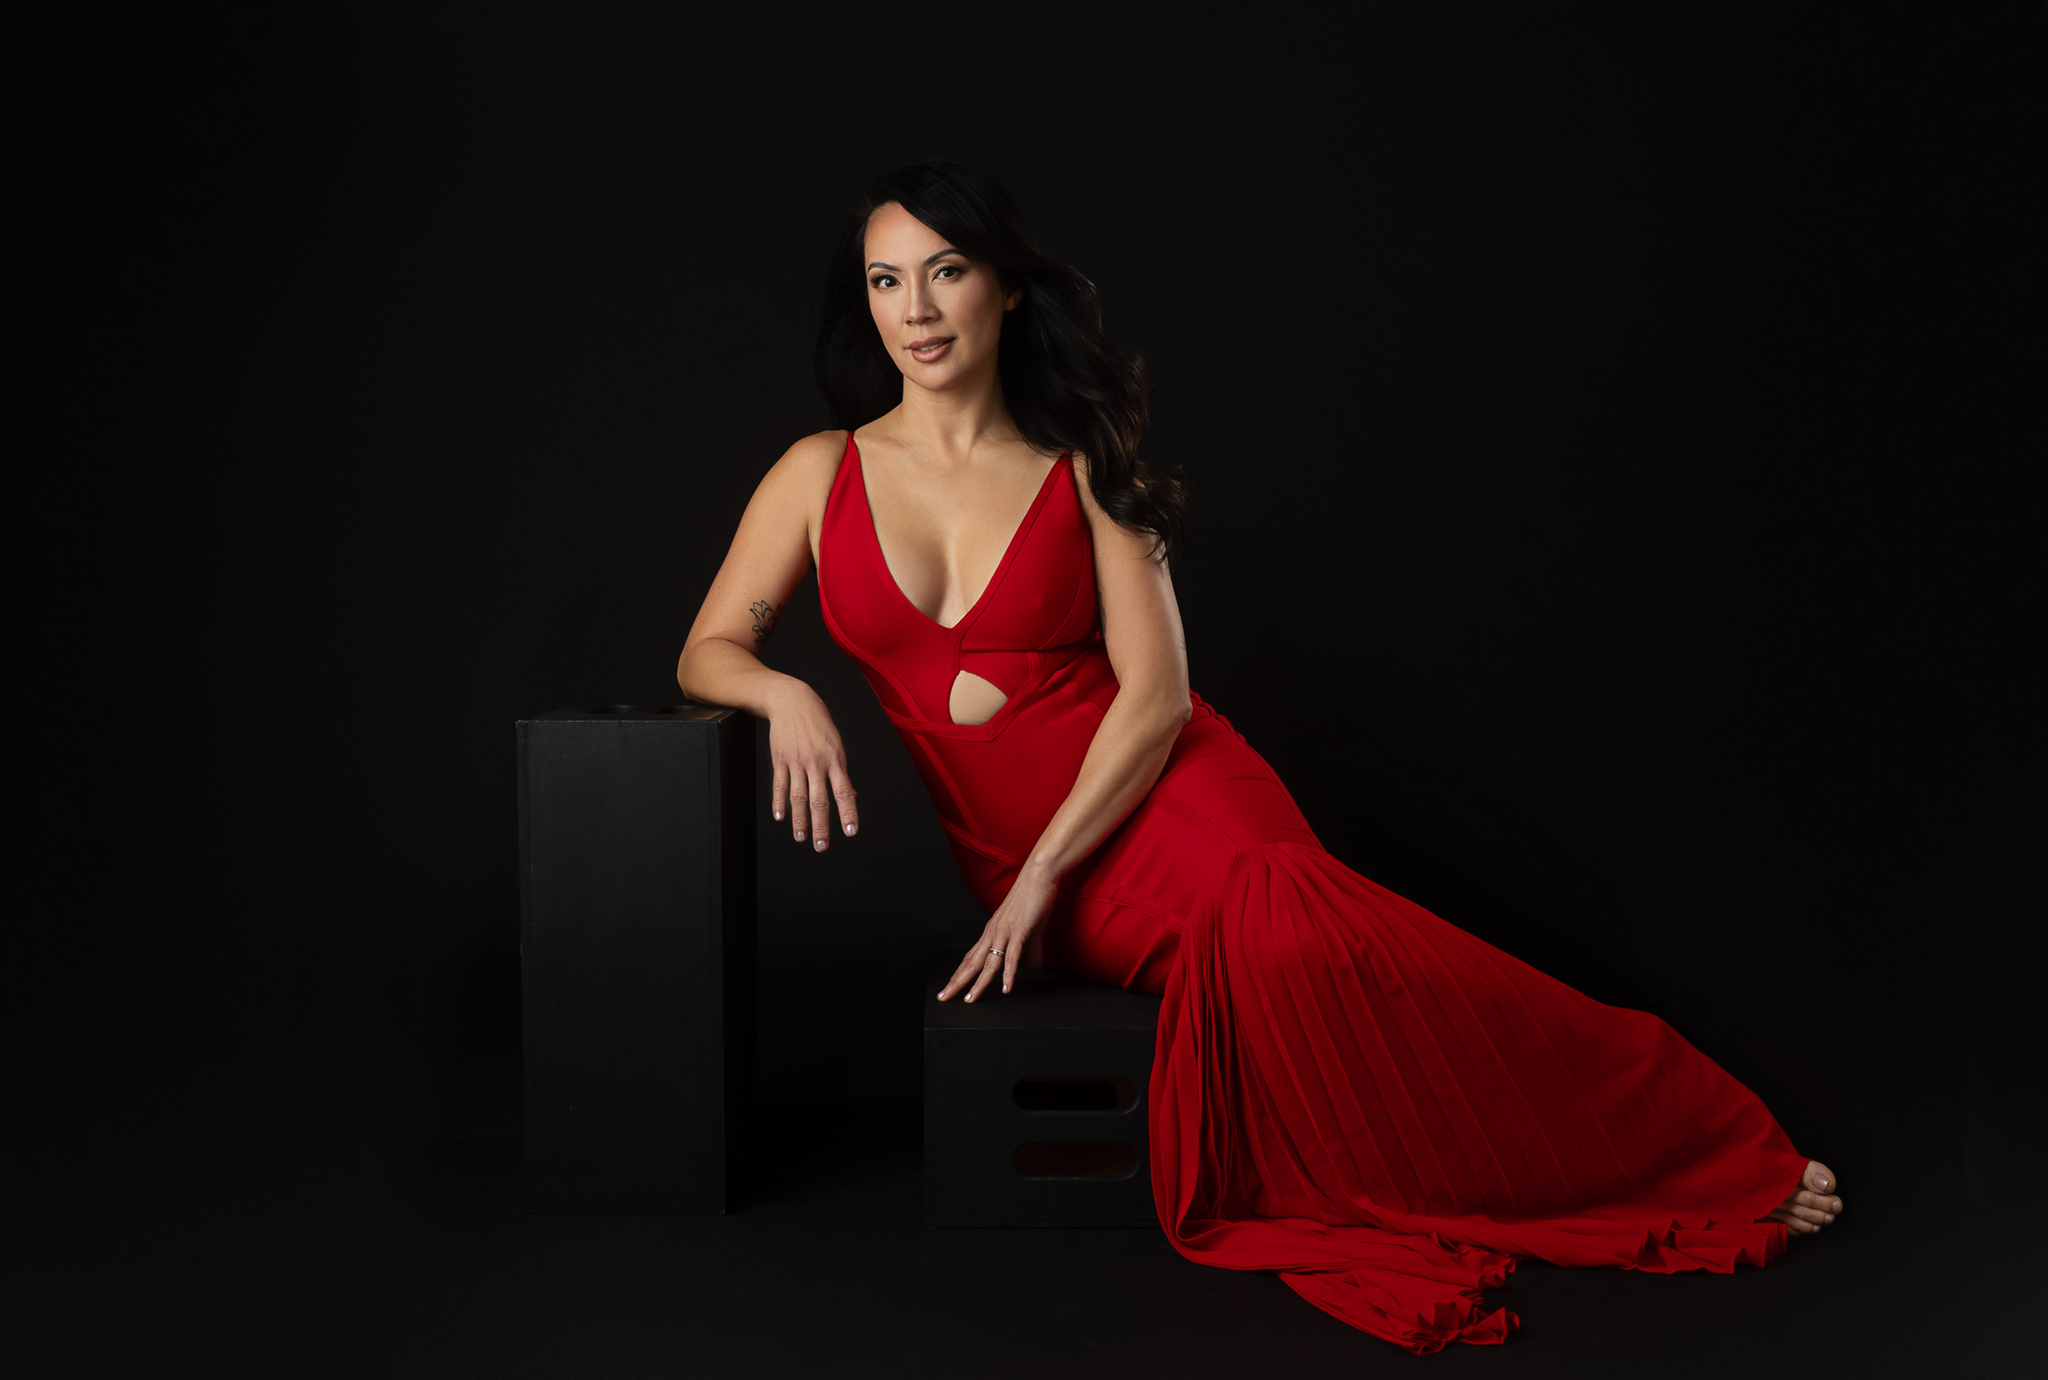 A woman in a red gown sits on a black box in a studio